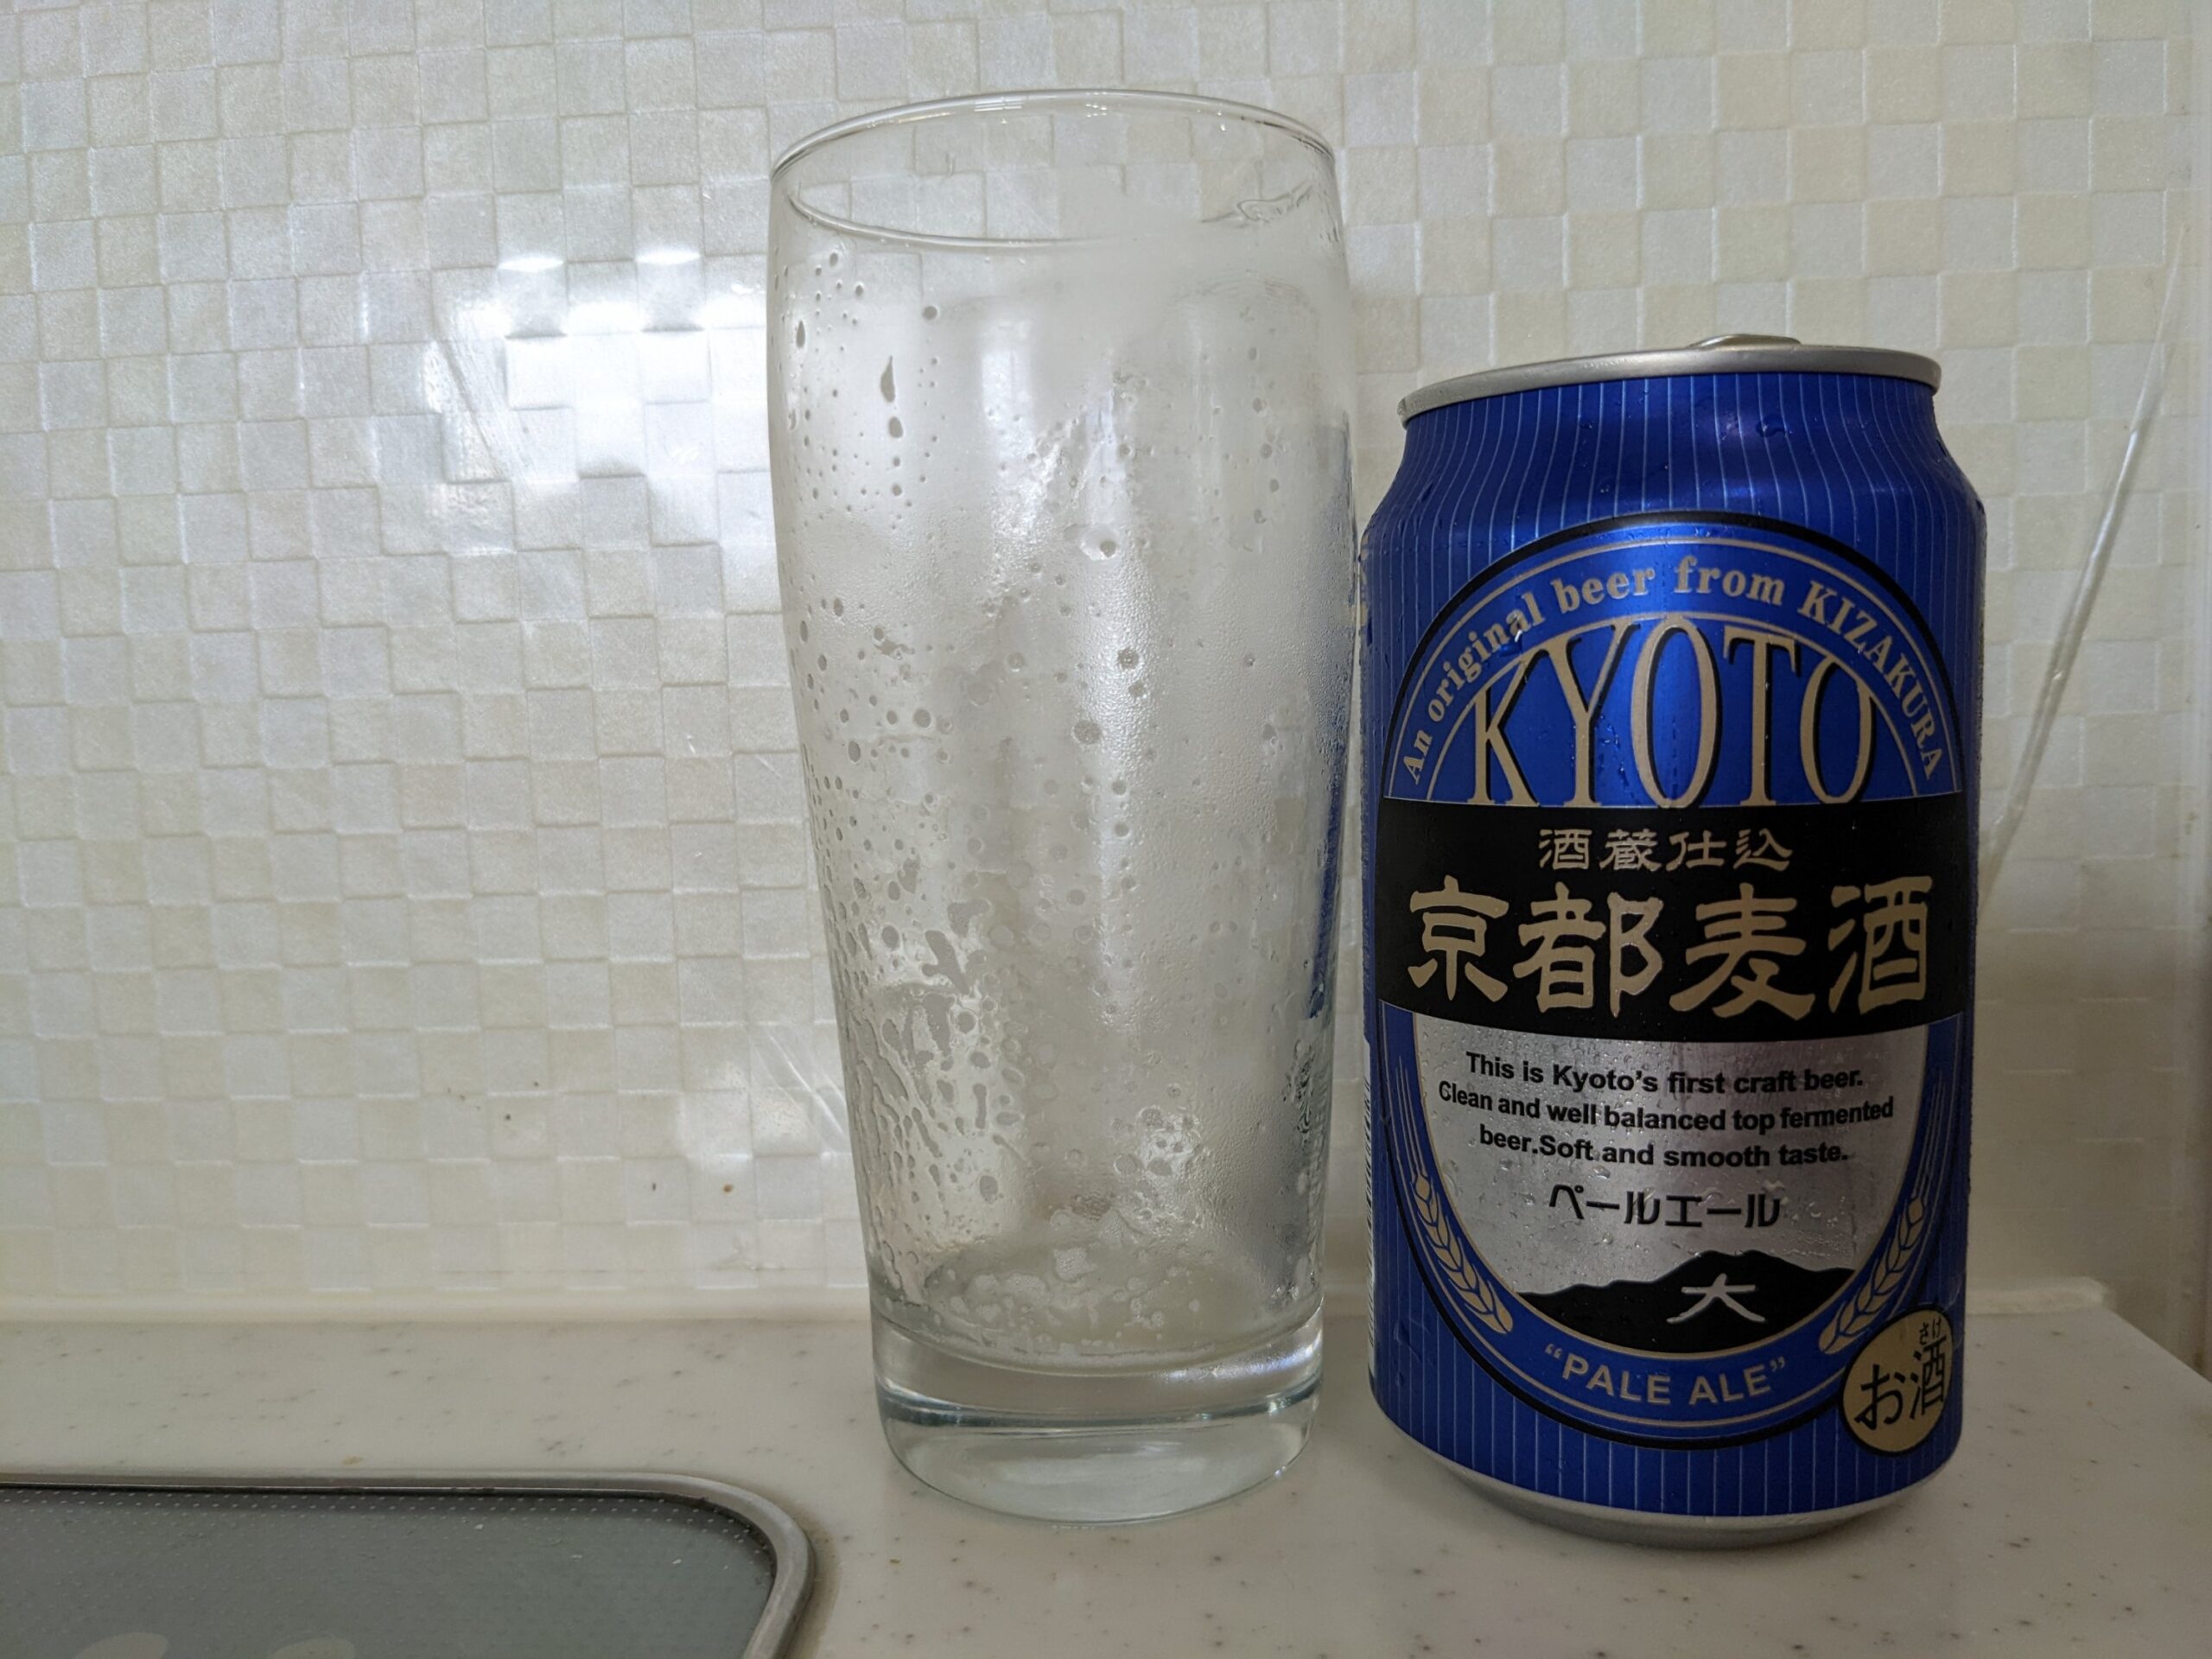 「京都麦酒ペールエール」を飲み終えたグラスとその空き缶